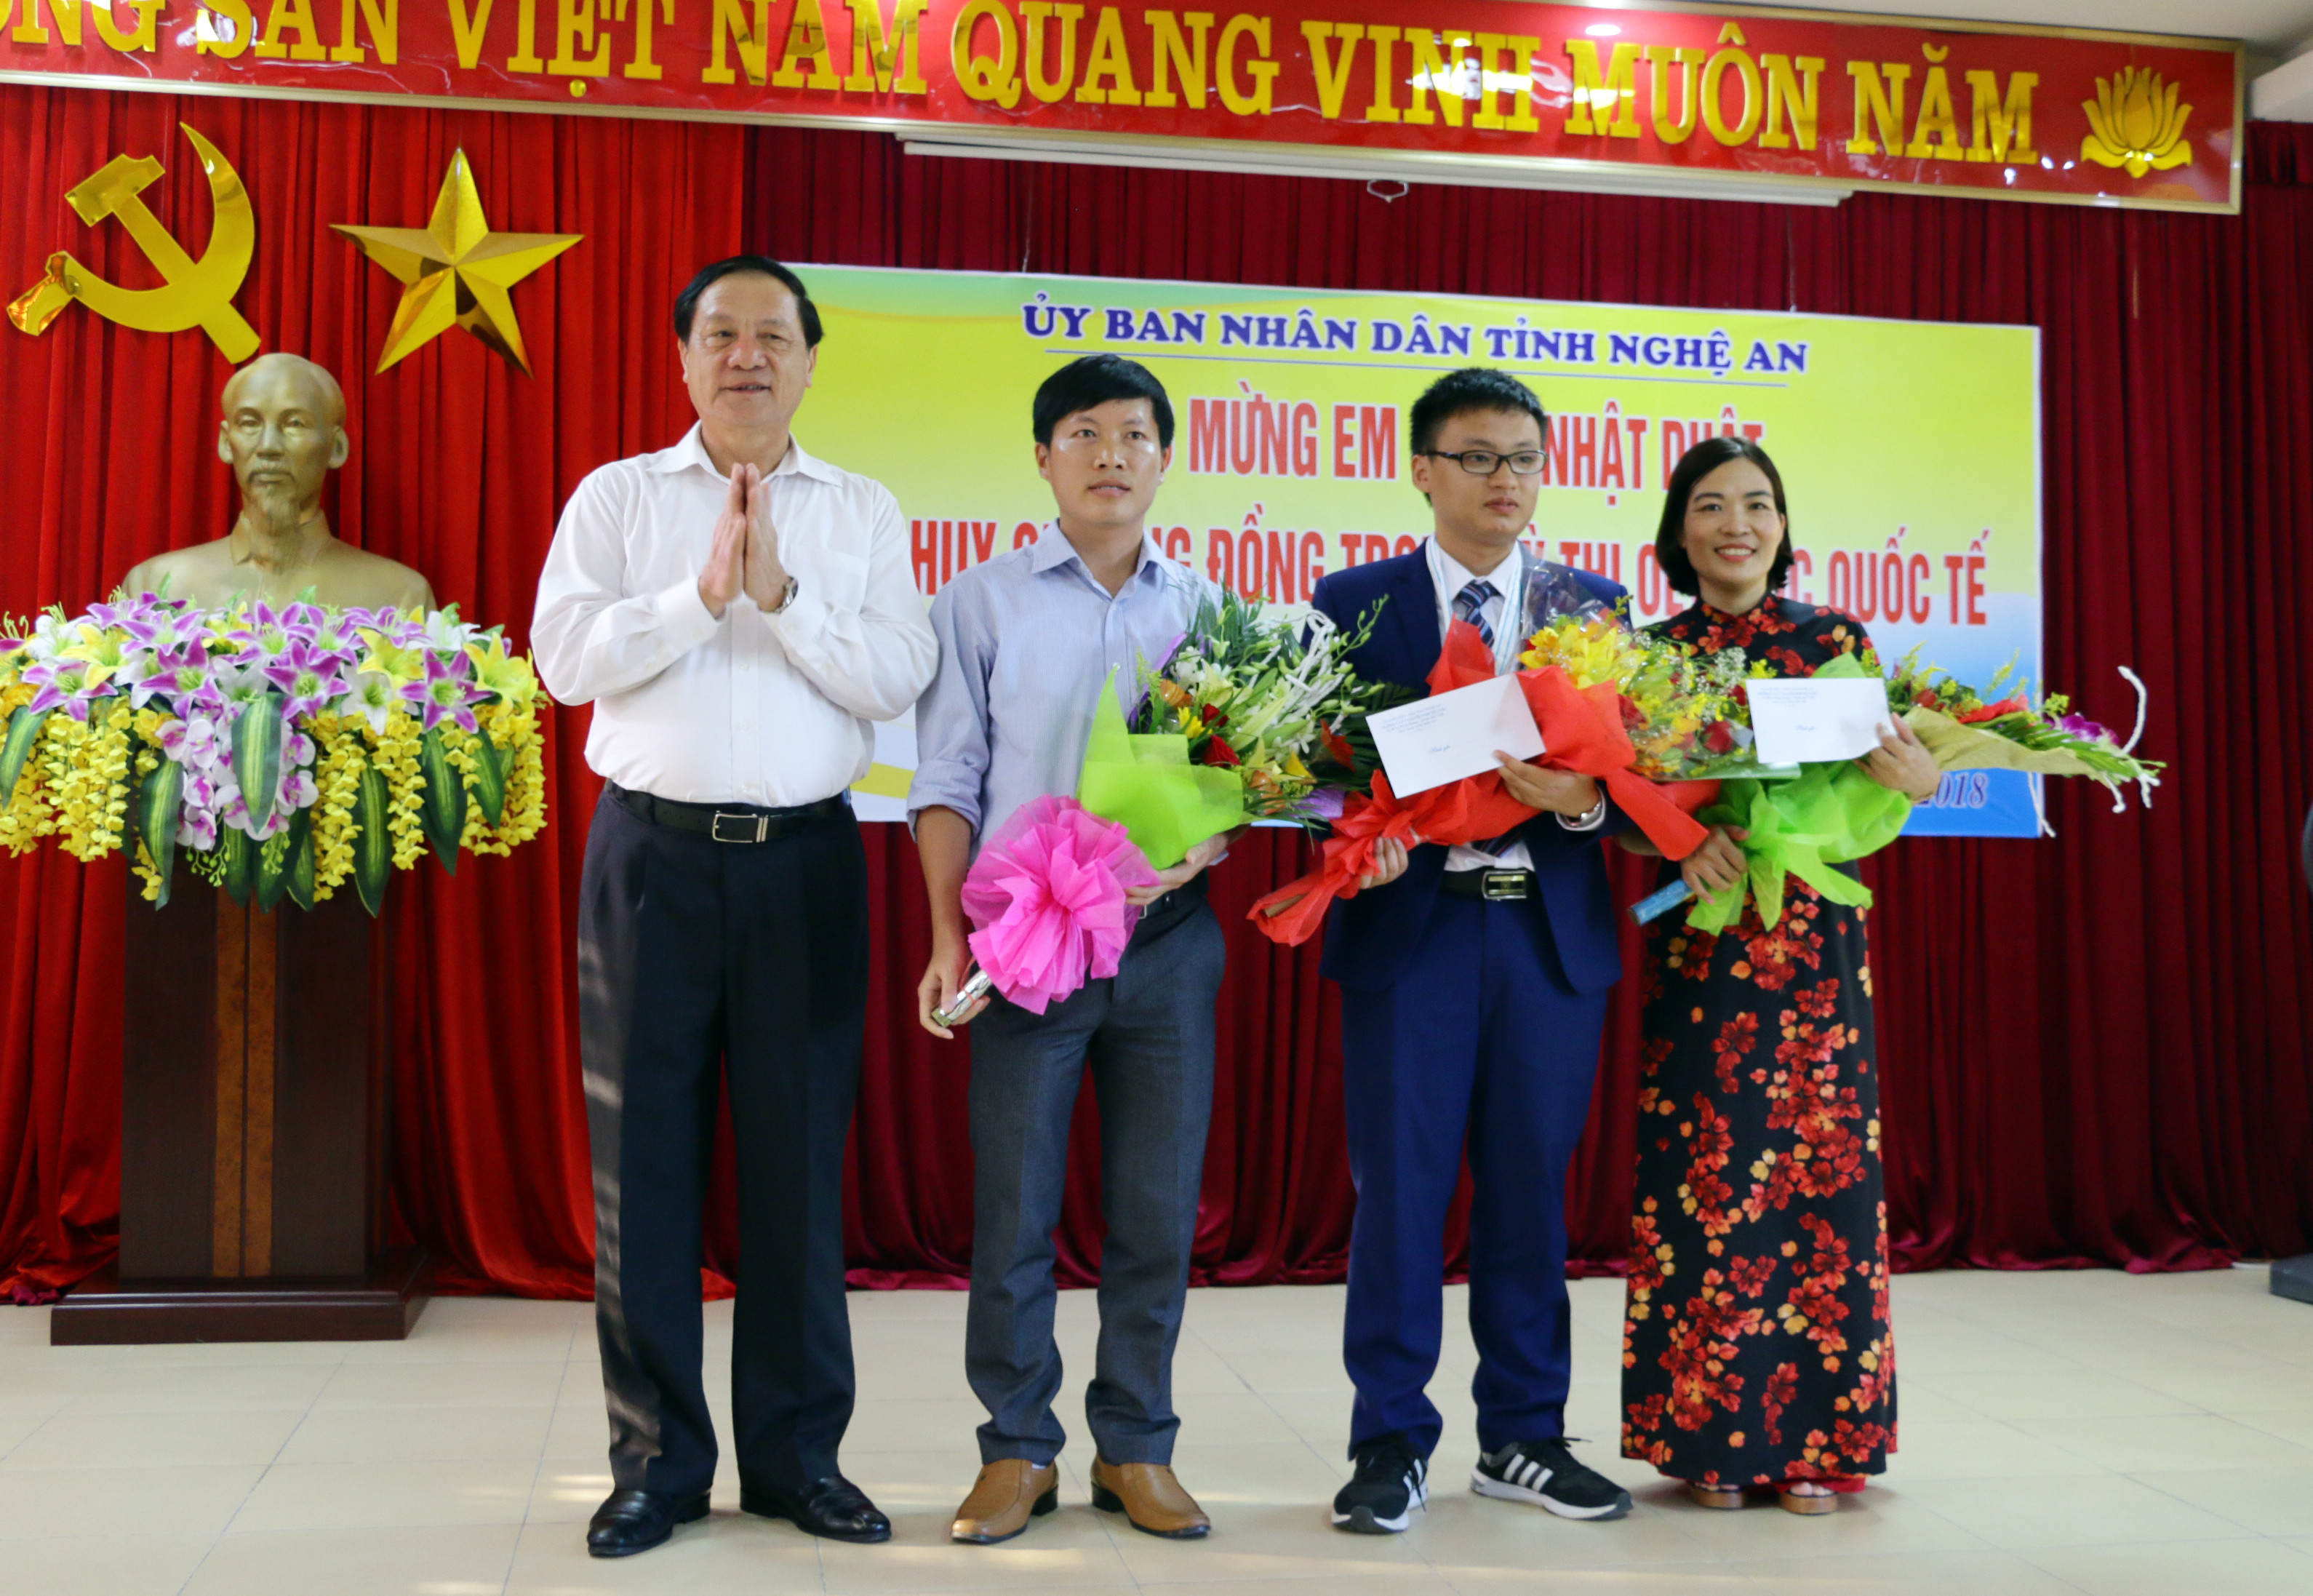 Đồng chí Lê Minh Thông trao quà của UBND tỉnh cho học sinh Phan Nhật Duật và các giáo viên bồi dưỡng. Ảnh: Mỹ Hà